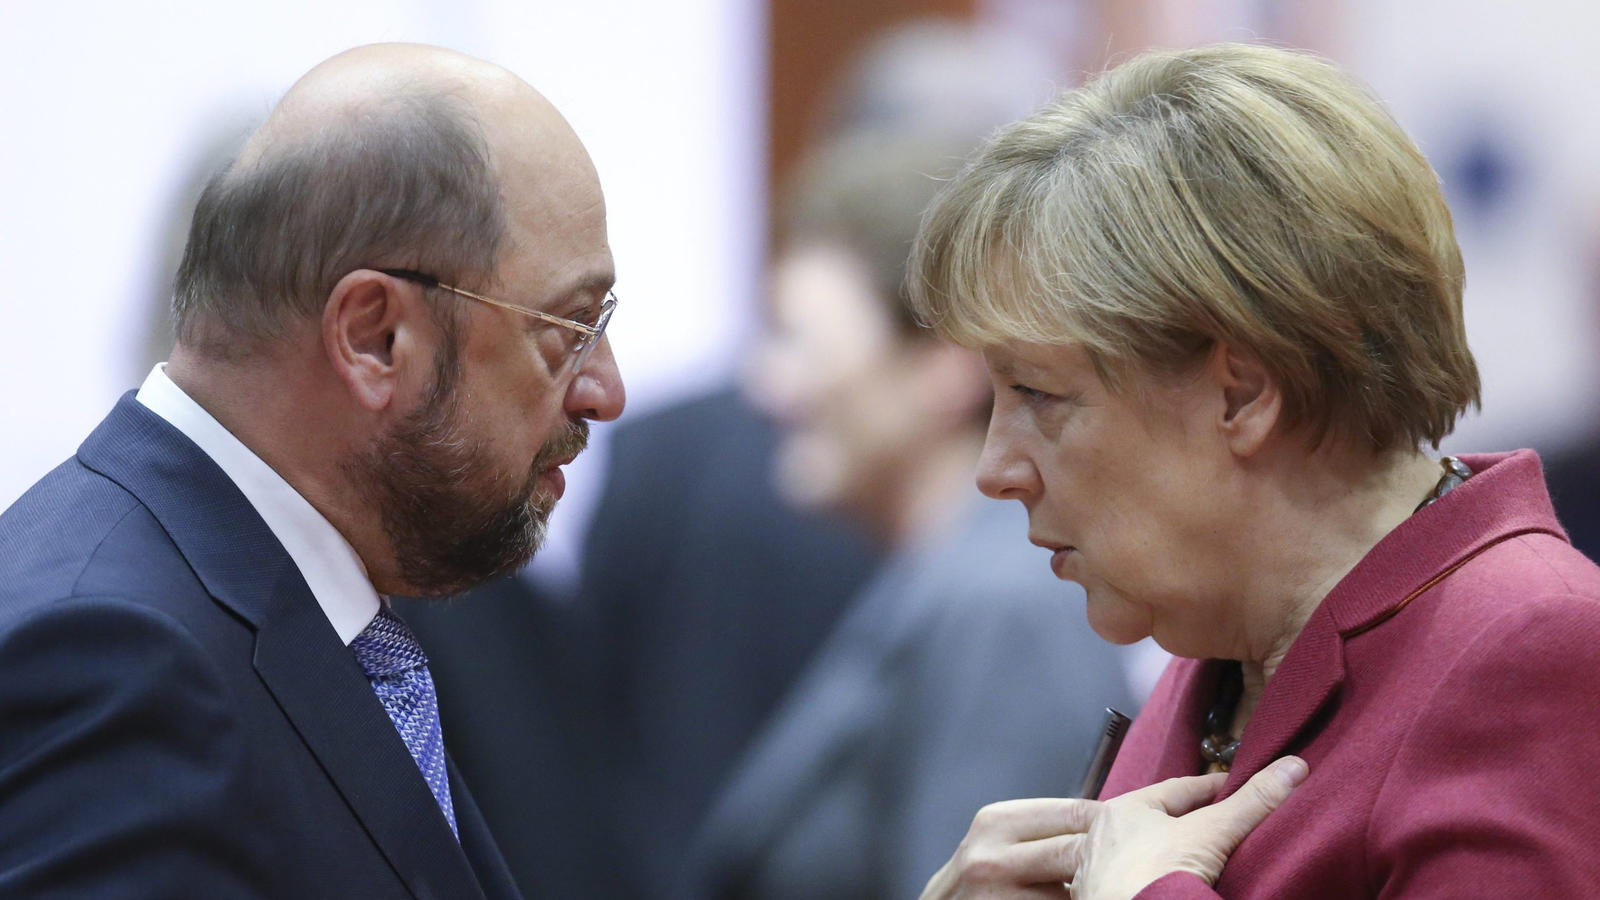 ARCHIv - Bundeskanzlerin Angela Merkel (CDU, r) und der damalige Präsident des Europäischen  Parlaments, Martin Schulz, unterhalten sich am 23.10.2014 in Brüssel (Belgien) vor Beginn des EU-Gipfels. (zu dpa "Schafft Schulz das 2:1 gegen Merkel?" vom 